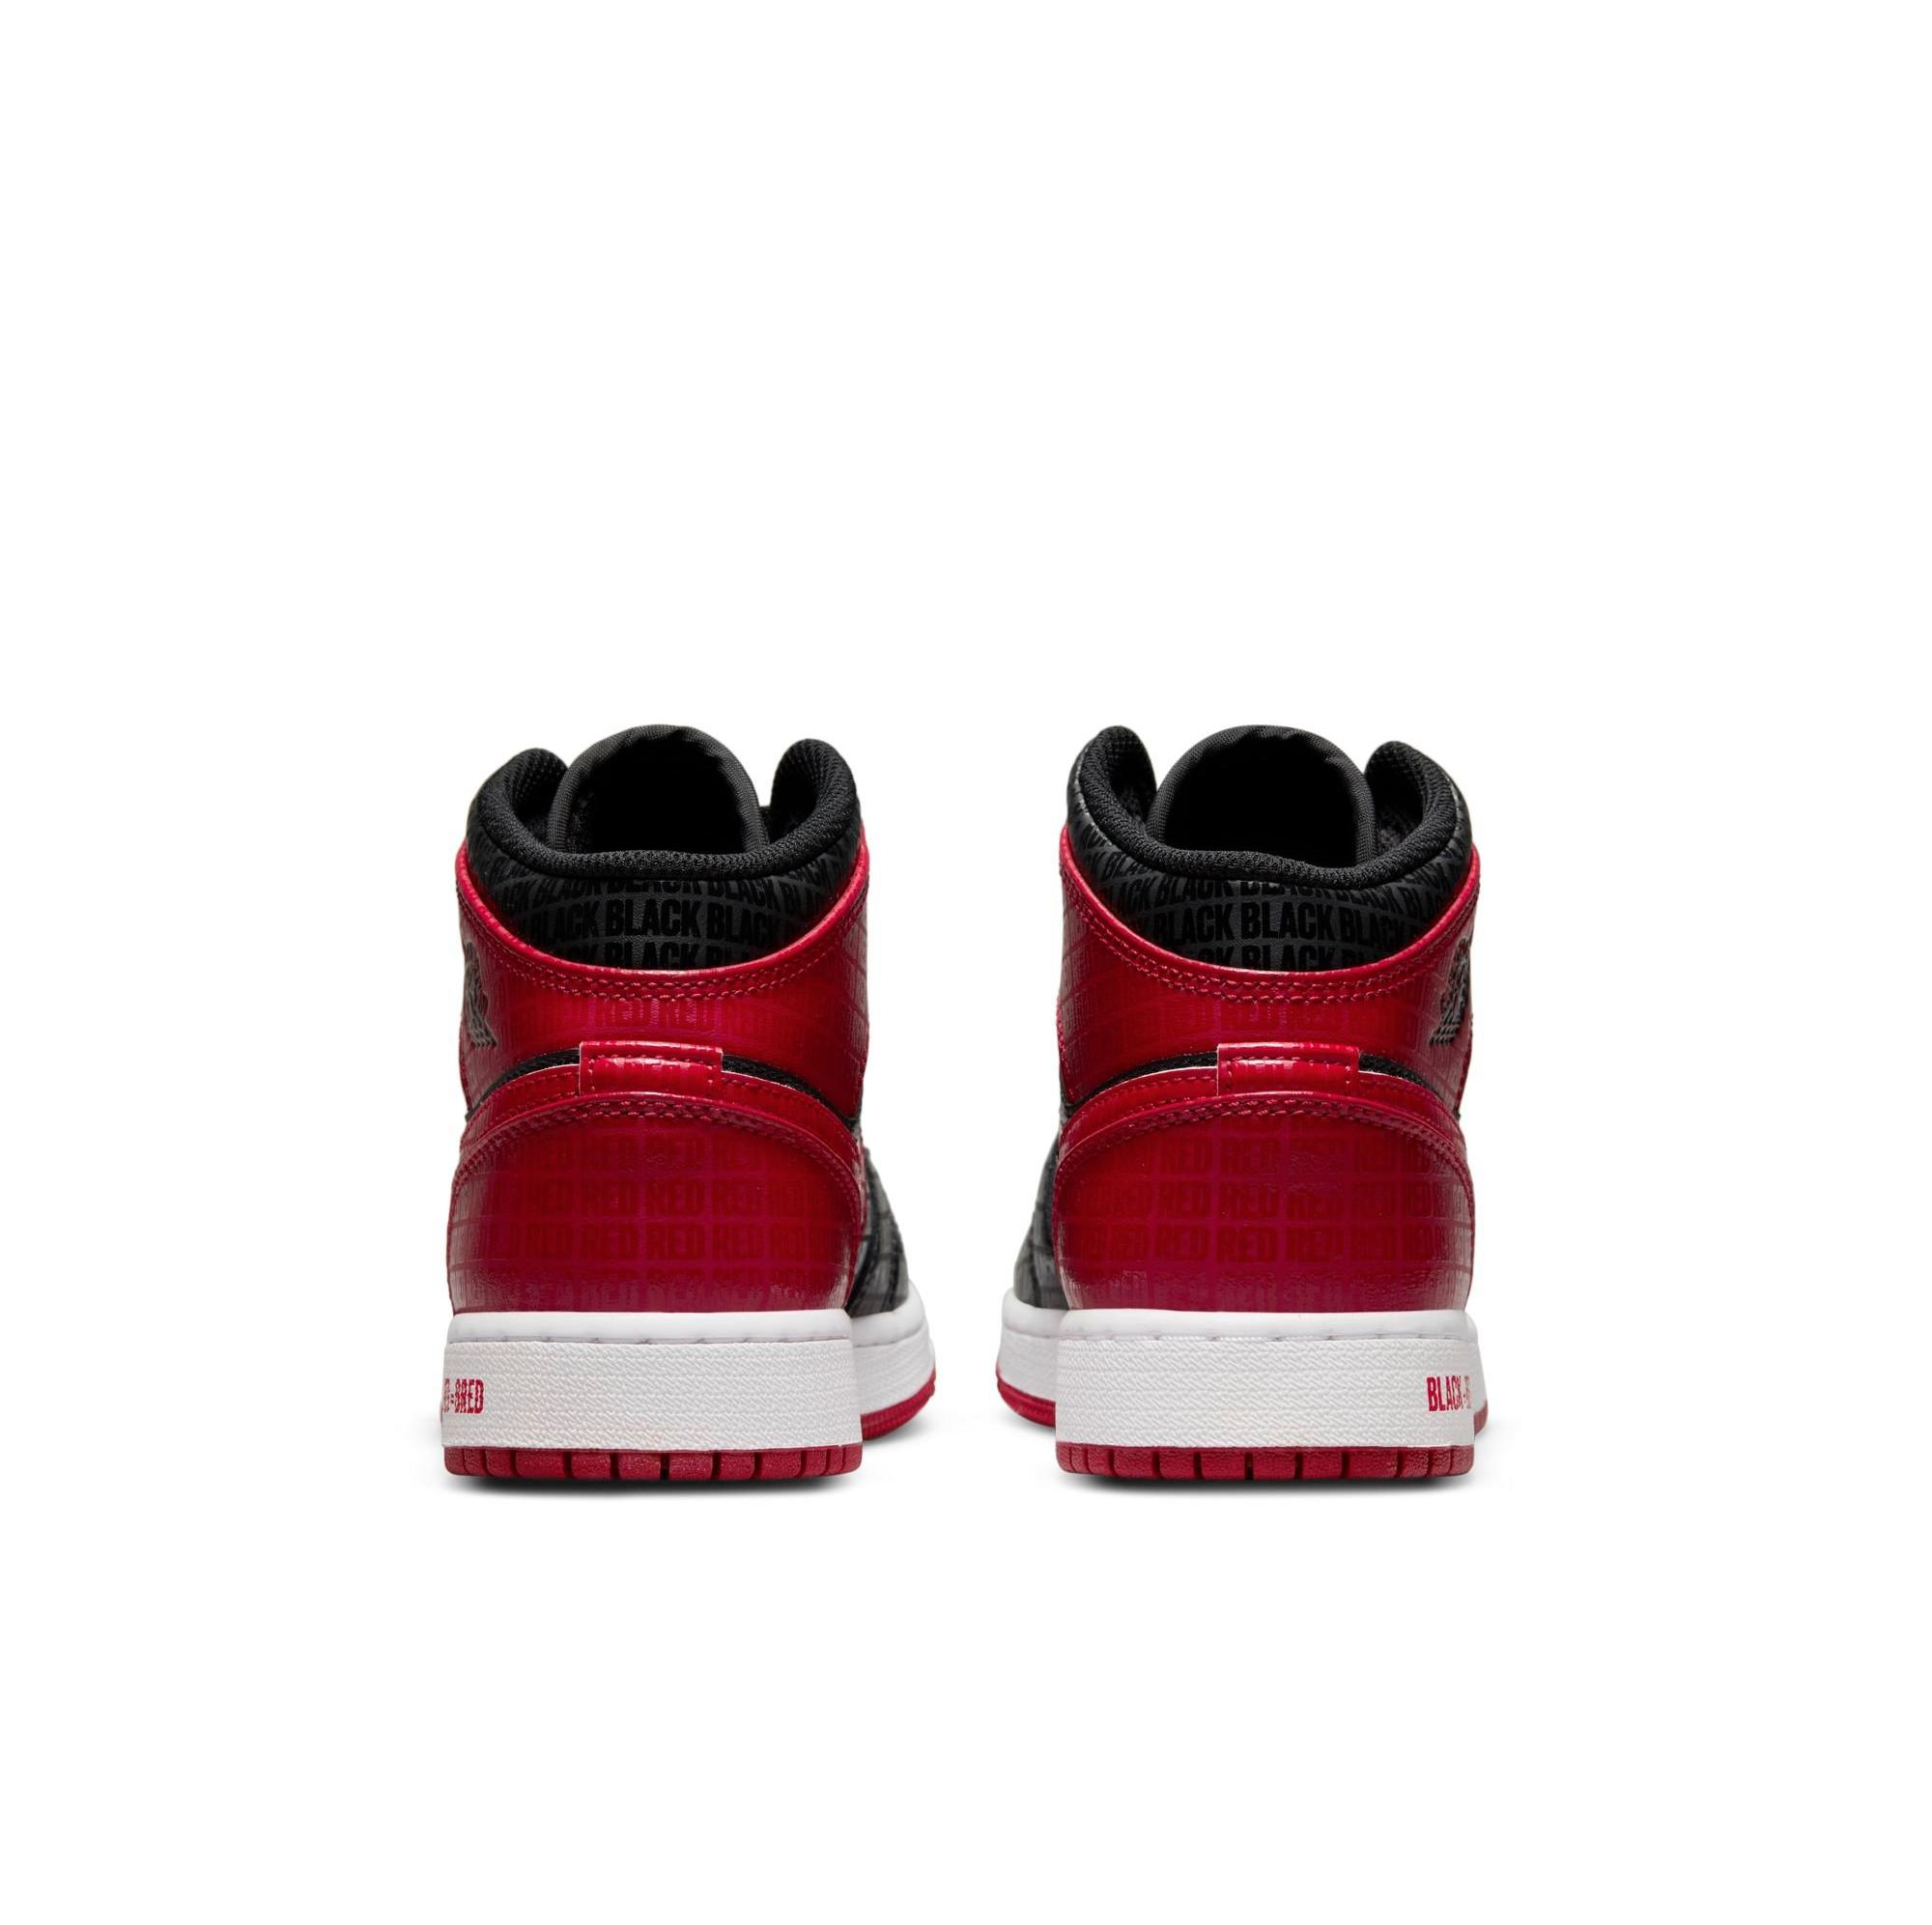 Sneakers Release – Jordan 1 Mid “Bred” Black/Gym